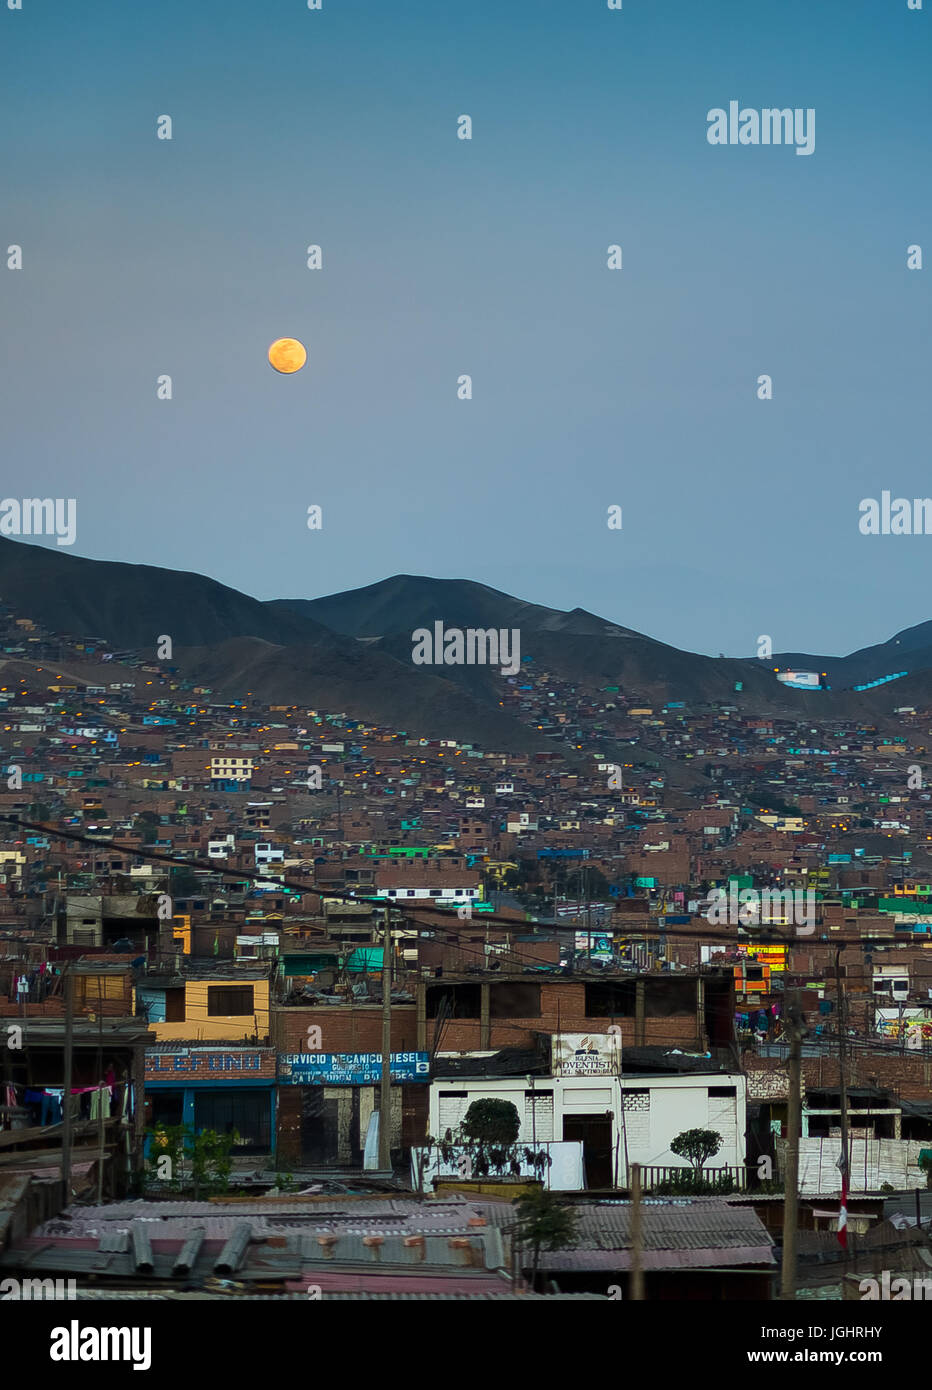 Cityscape of Villa el Salvador in Peru Stock Photo